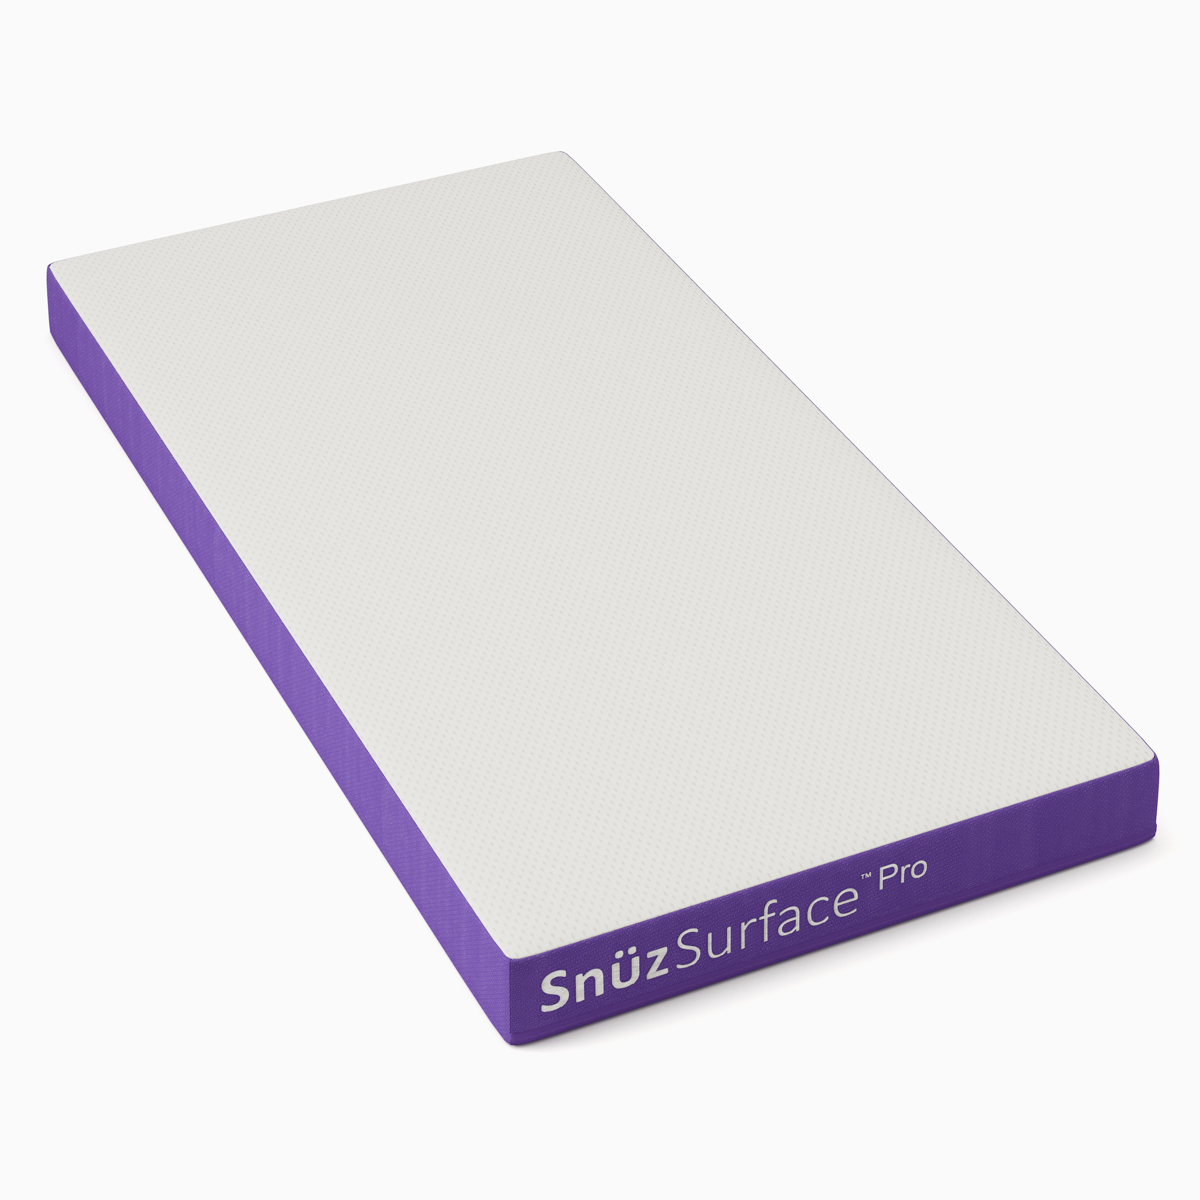 Snüz Surface Pro Matras - Cot Bed (70x140 cm.)